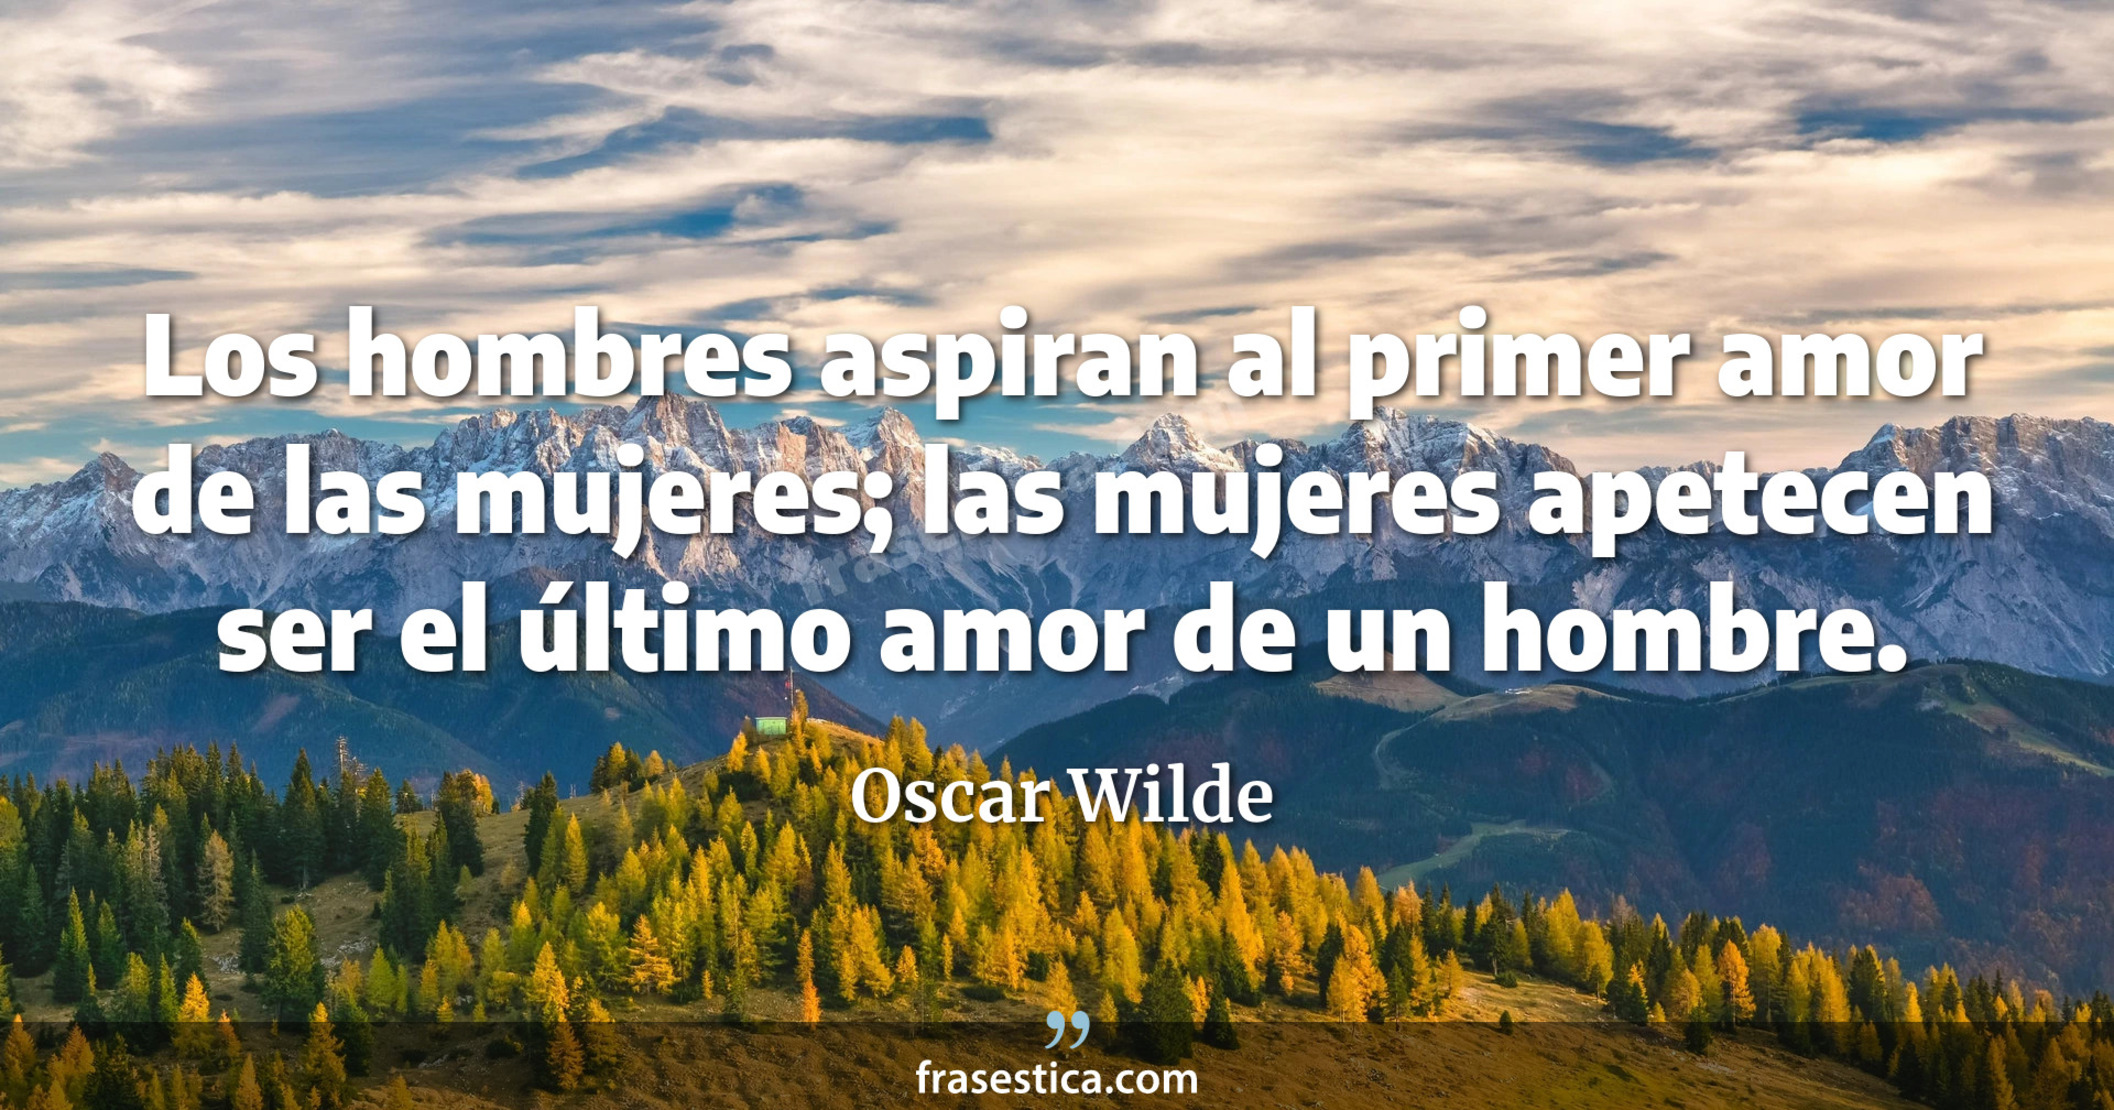 Los hombres aspiran al primer amor de las mujeres; las mujeres apetecen ser el último amor de un hombre. - Oscar Wilde